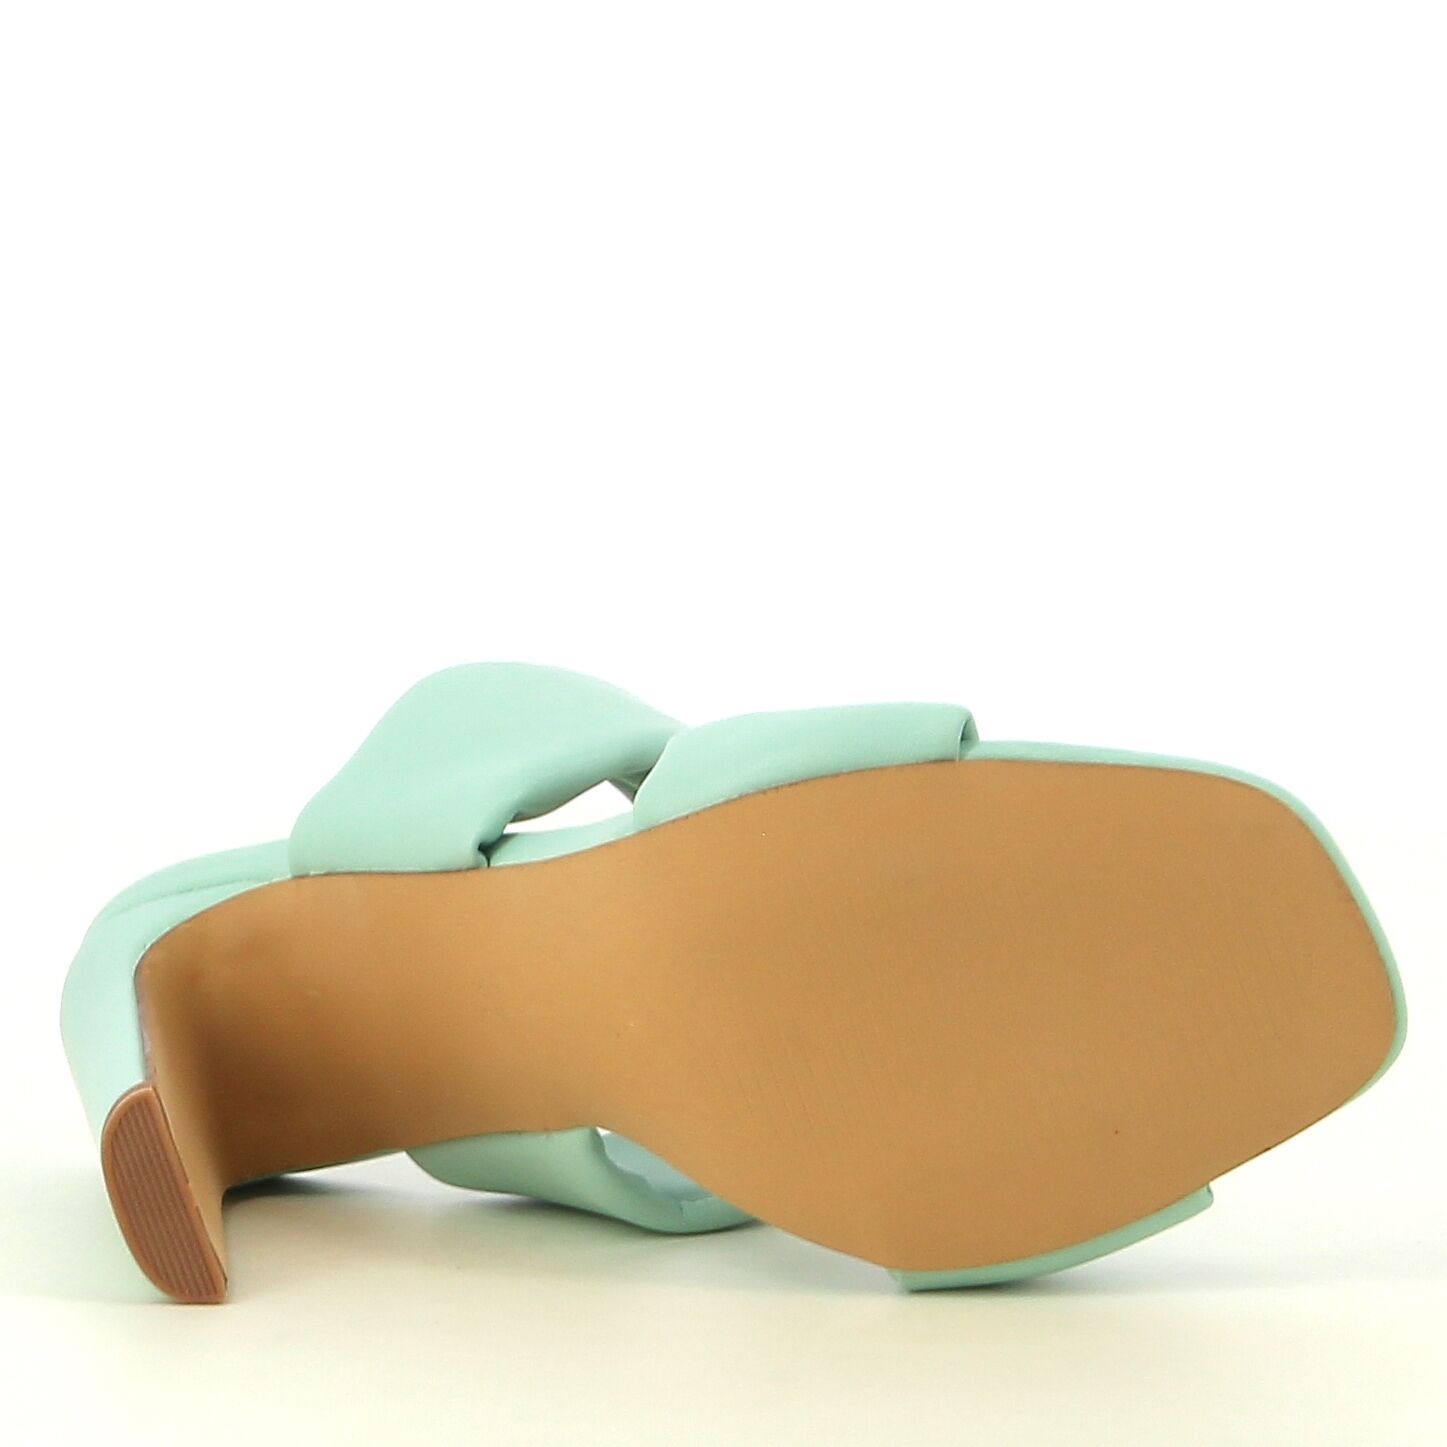 Ken Shoe Fashion - Mint - Instappers